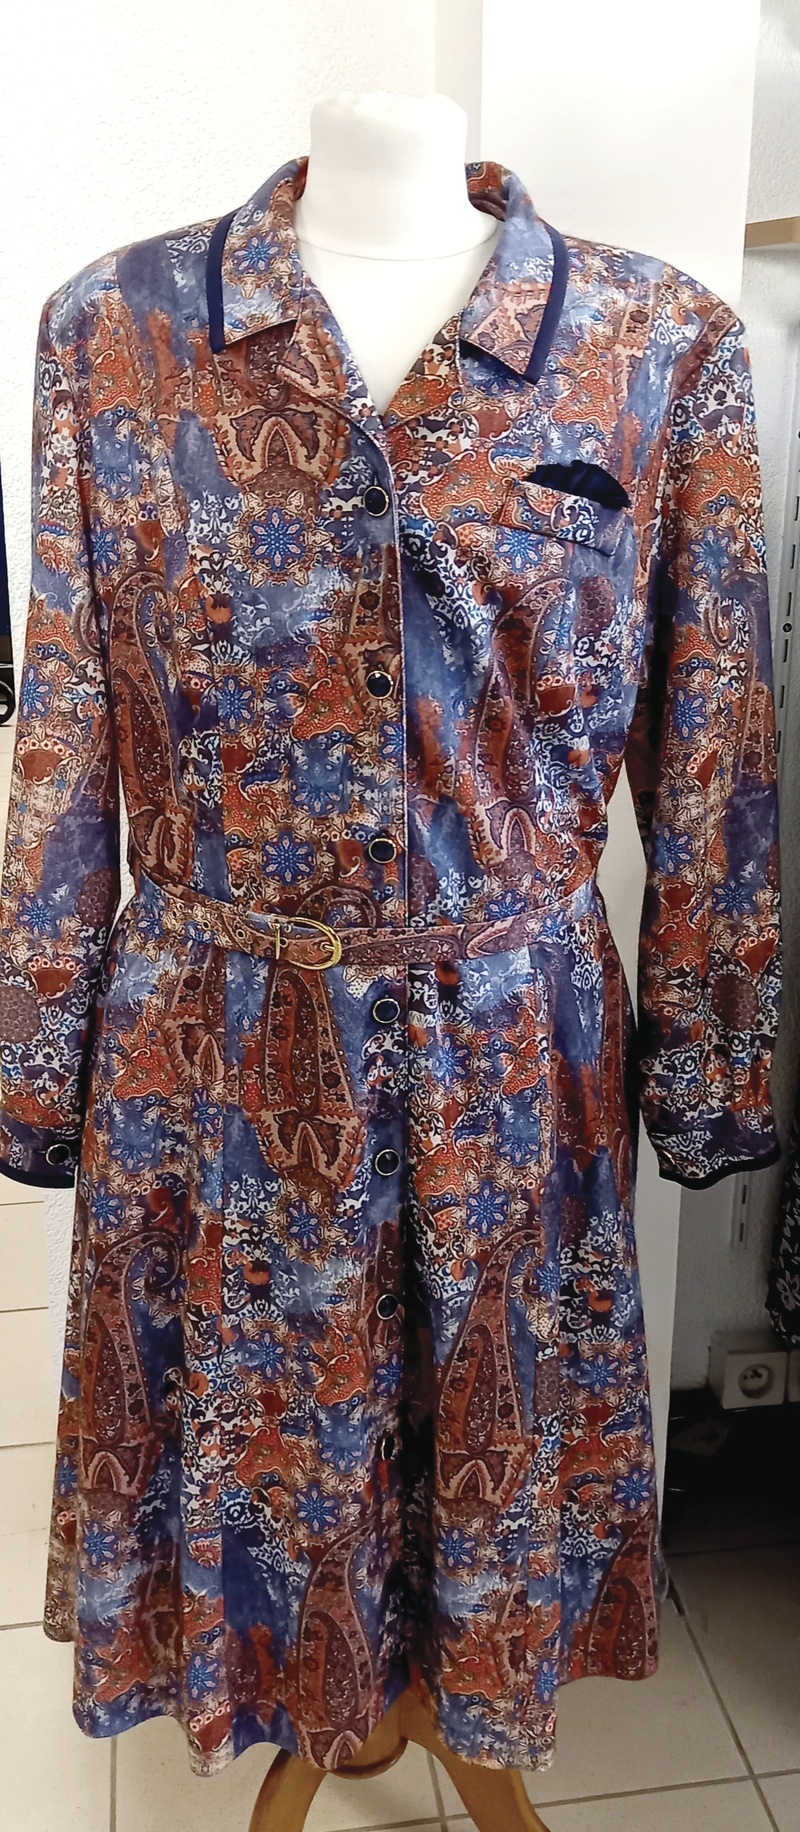 ROBE GRIFFON MANCHES LONGUES - Robes pour femmes - Autrement libre - Voir en grand